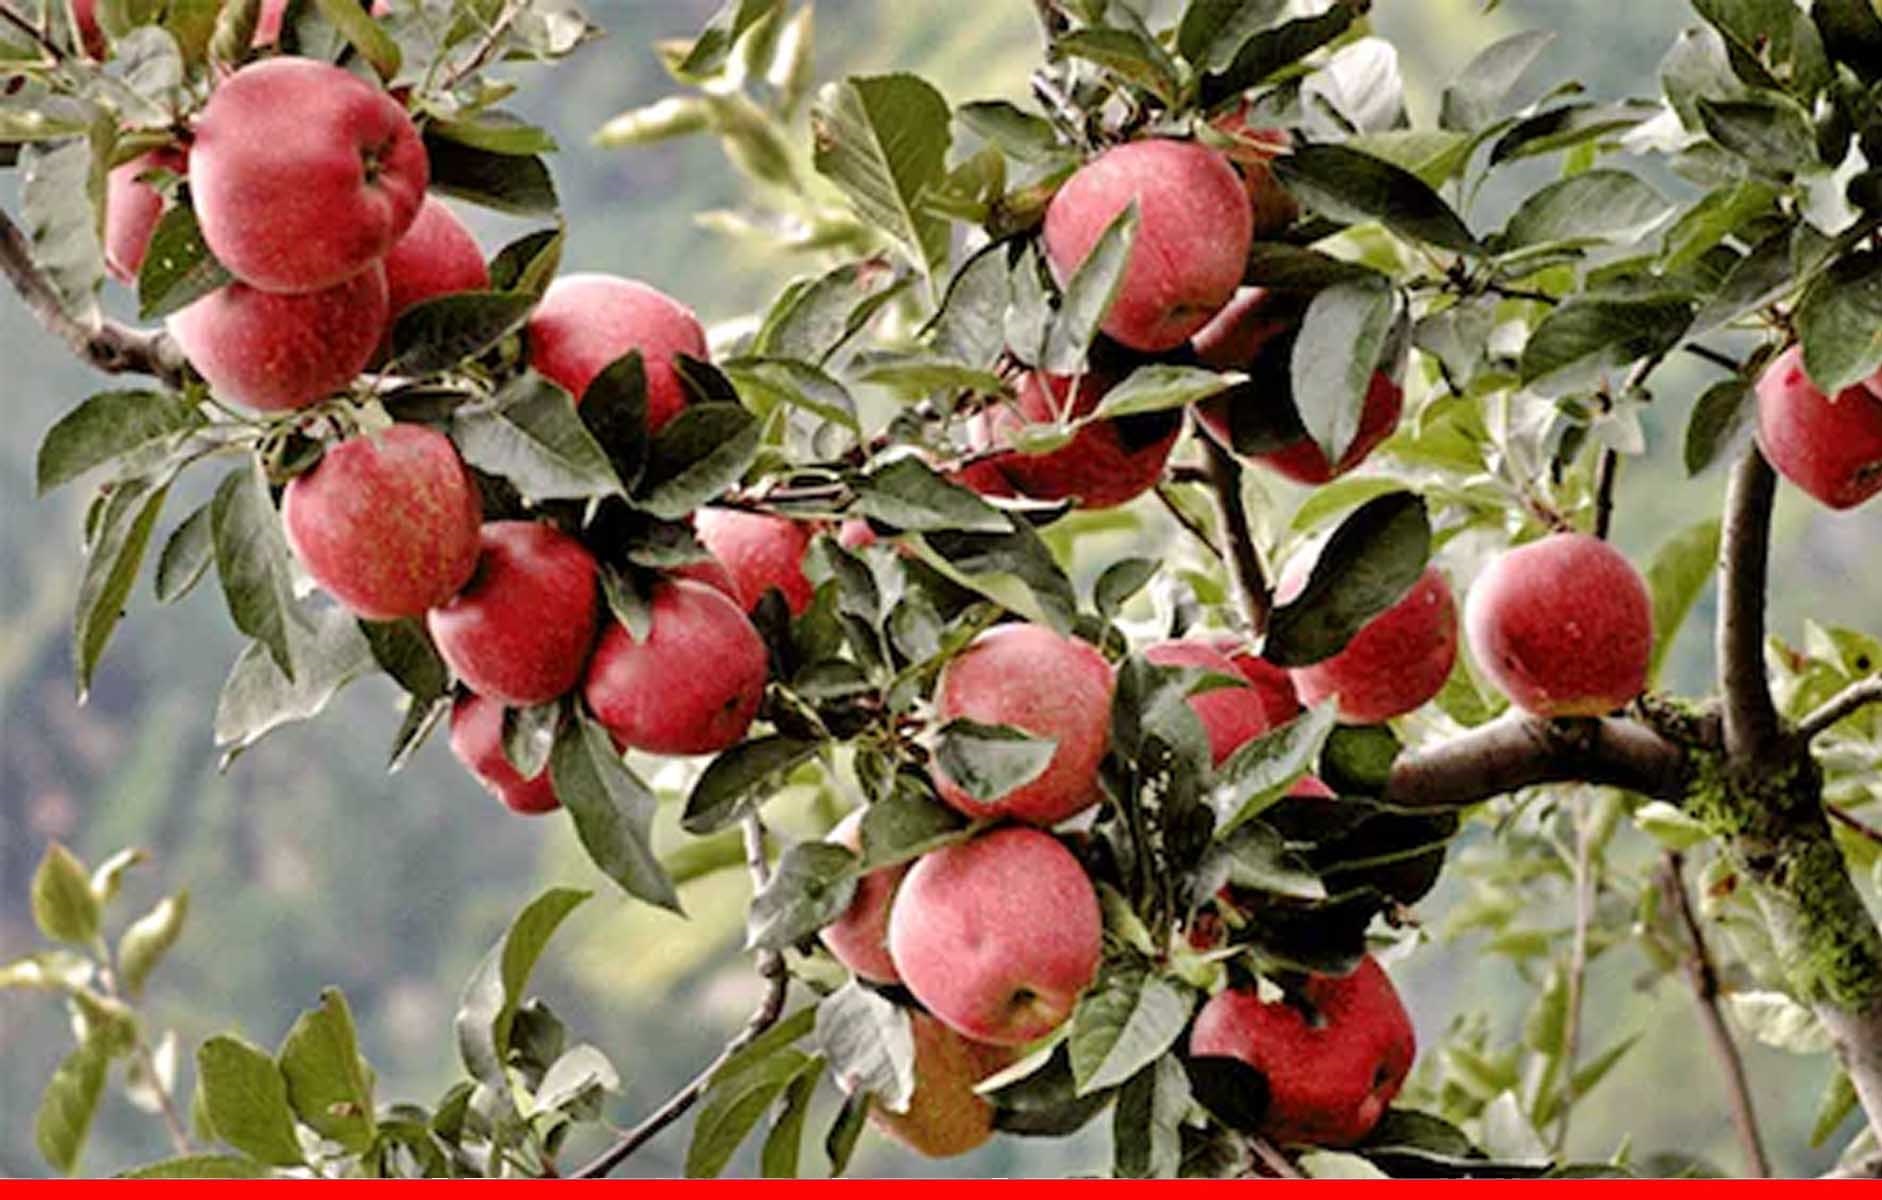 हिमाचल में अडाणी की कपंनी ने कम किए सेब खरीद के दाम, बागवानों में नाराजगी